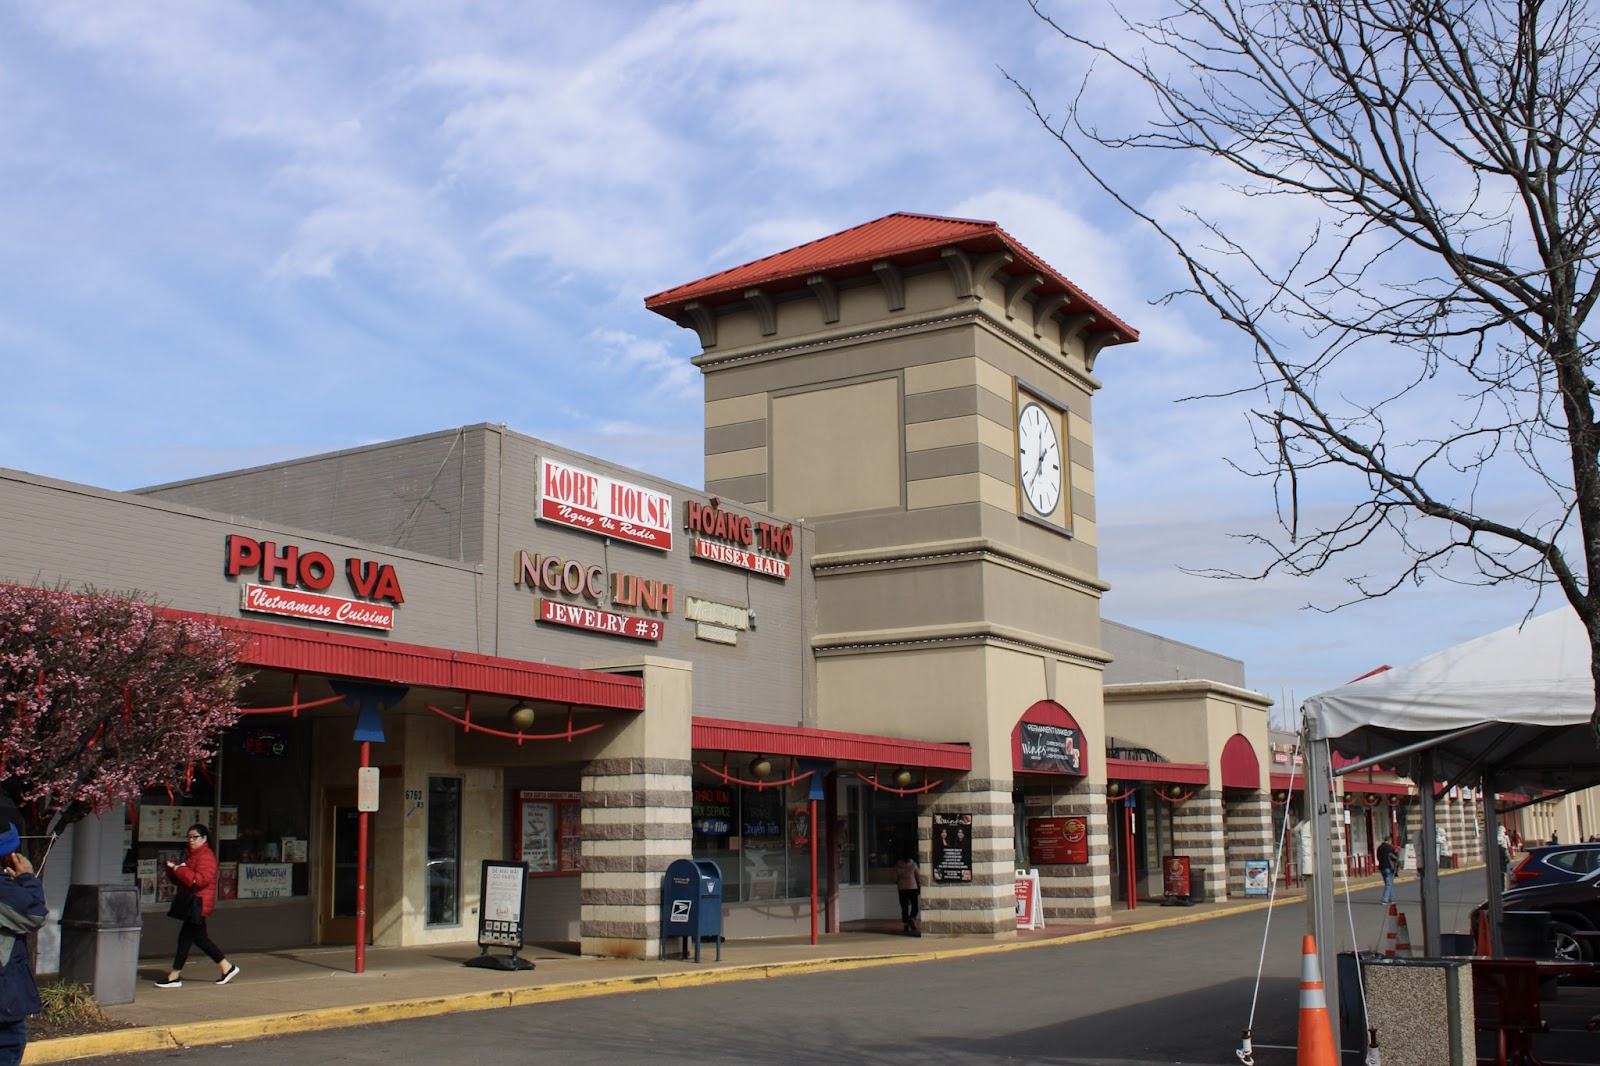 The clock tower at Eden Center, a Vietnamese shopping center in Falls Church, Virginia.